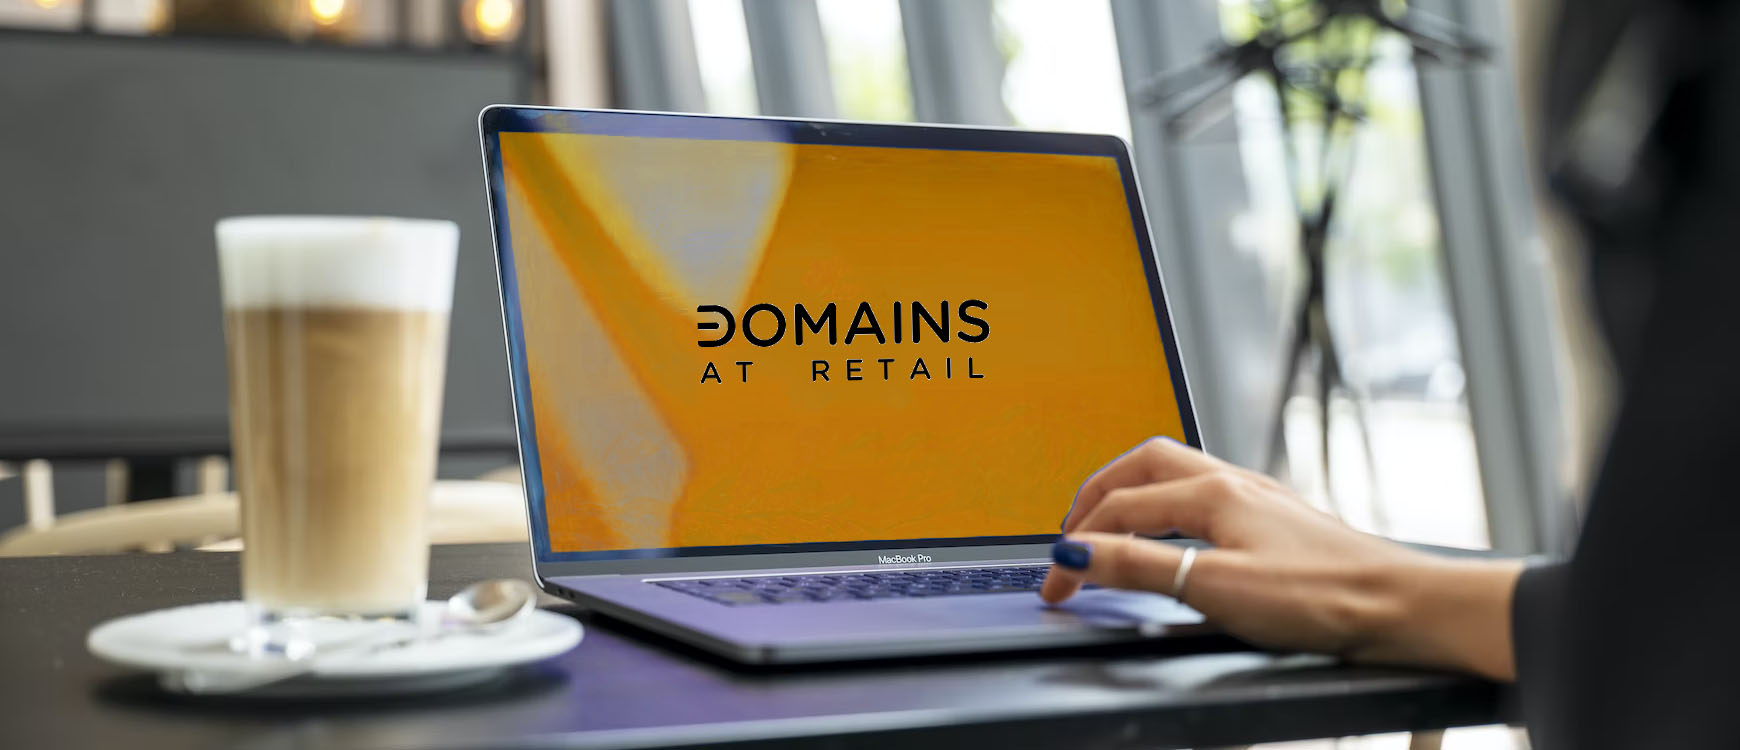 domains at retail on orange laptop screen